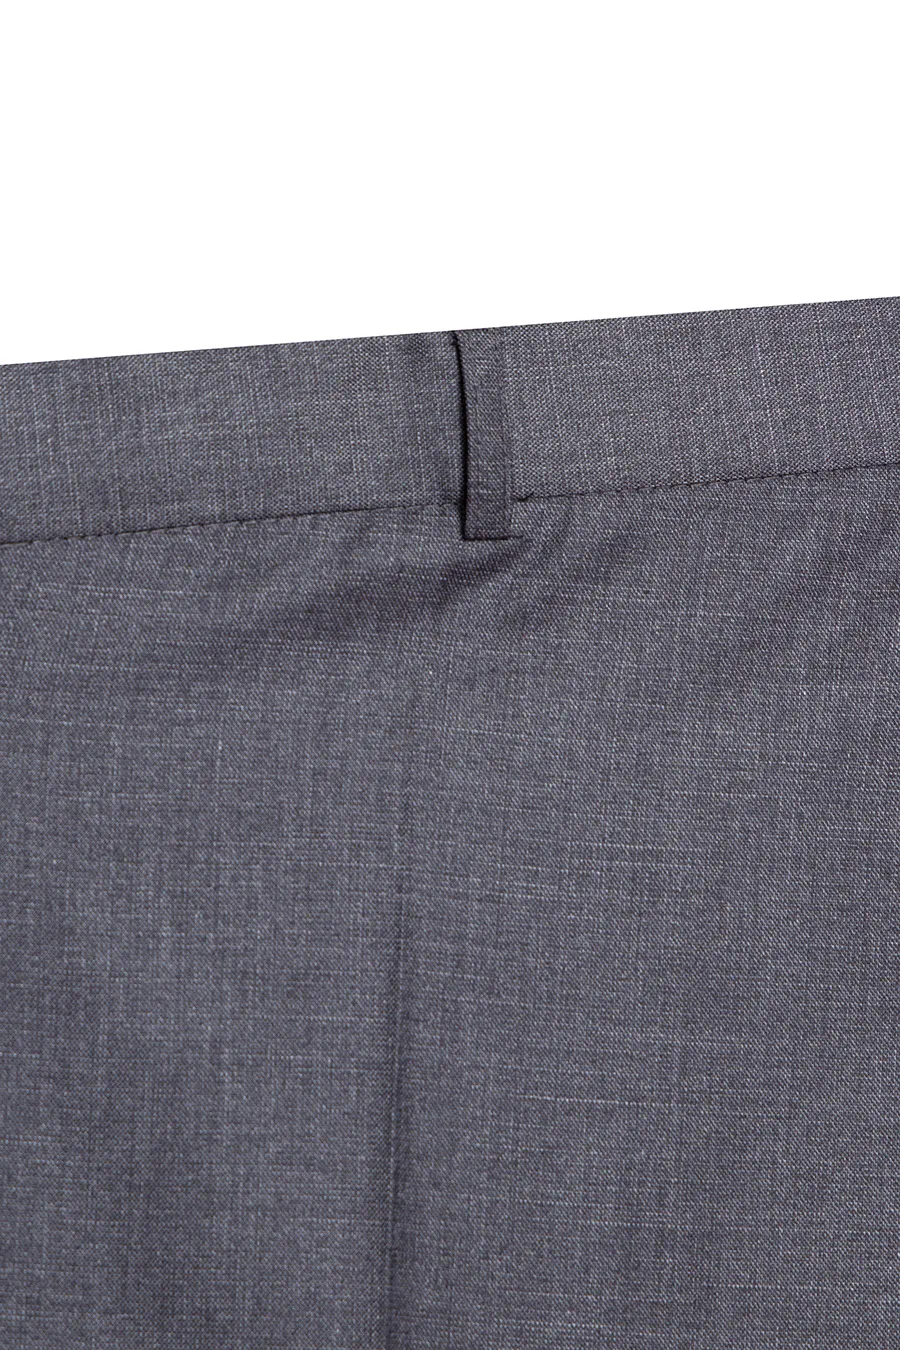 Офисные брюки серого цвета большого размера